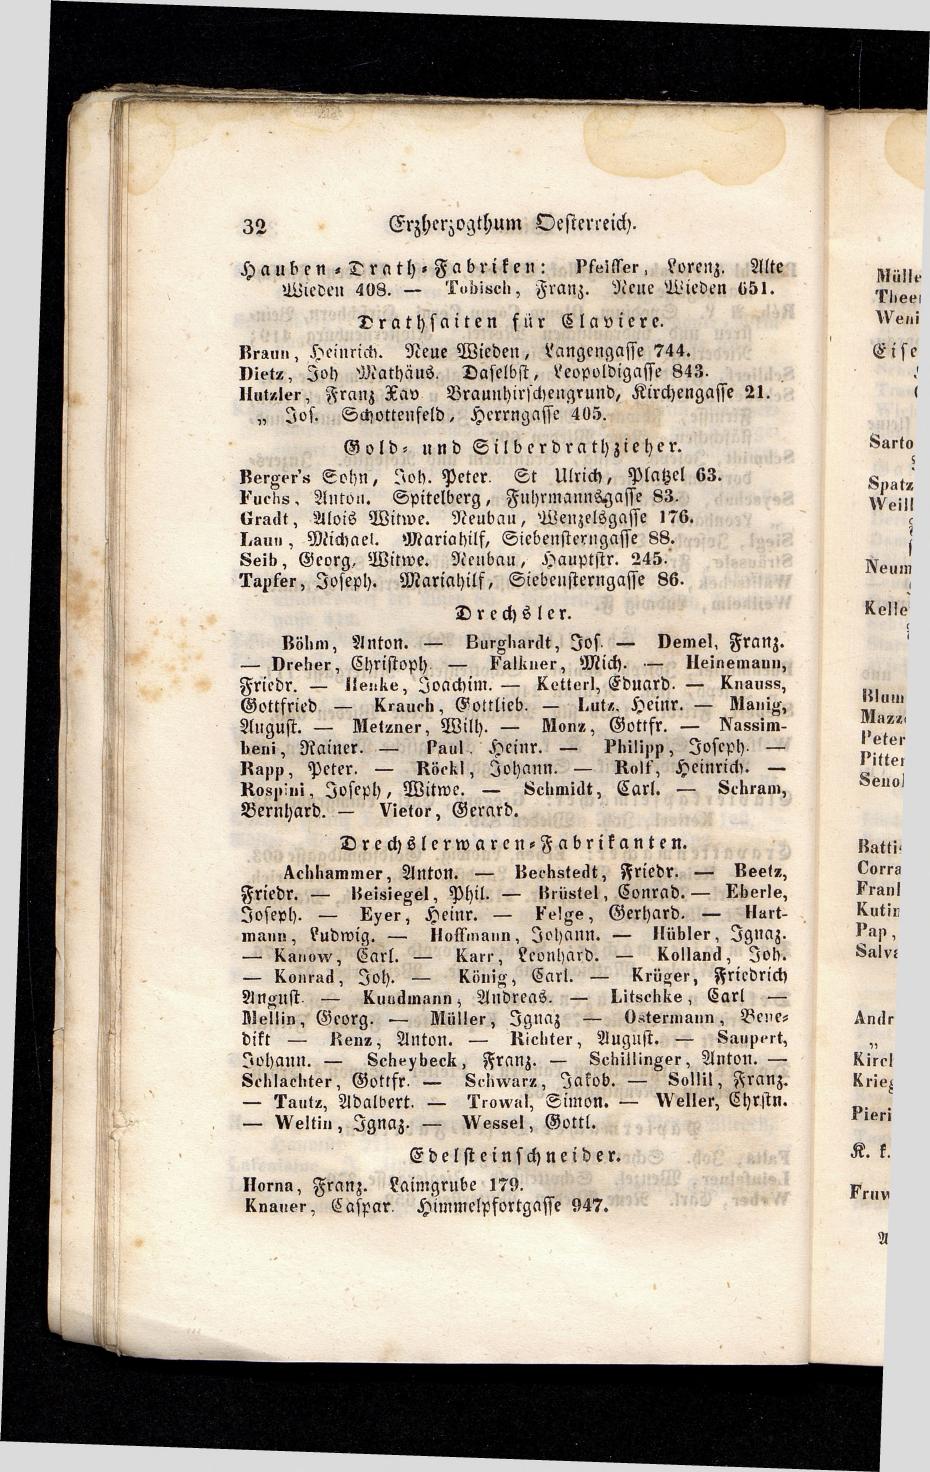 Grosses Adressbuch der Kaufleute. No. 13. Oesterreich ober u. unter der Enns 1844 - Seite 36